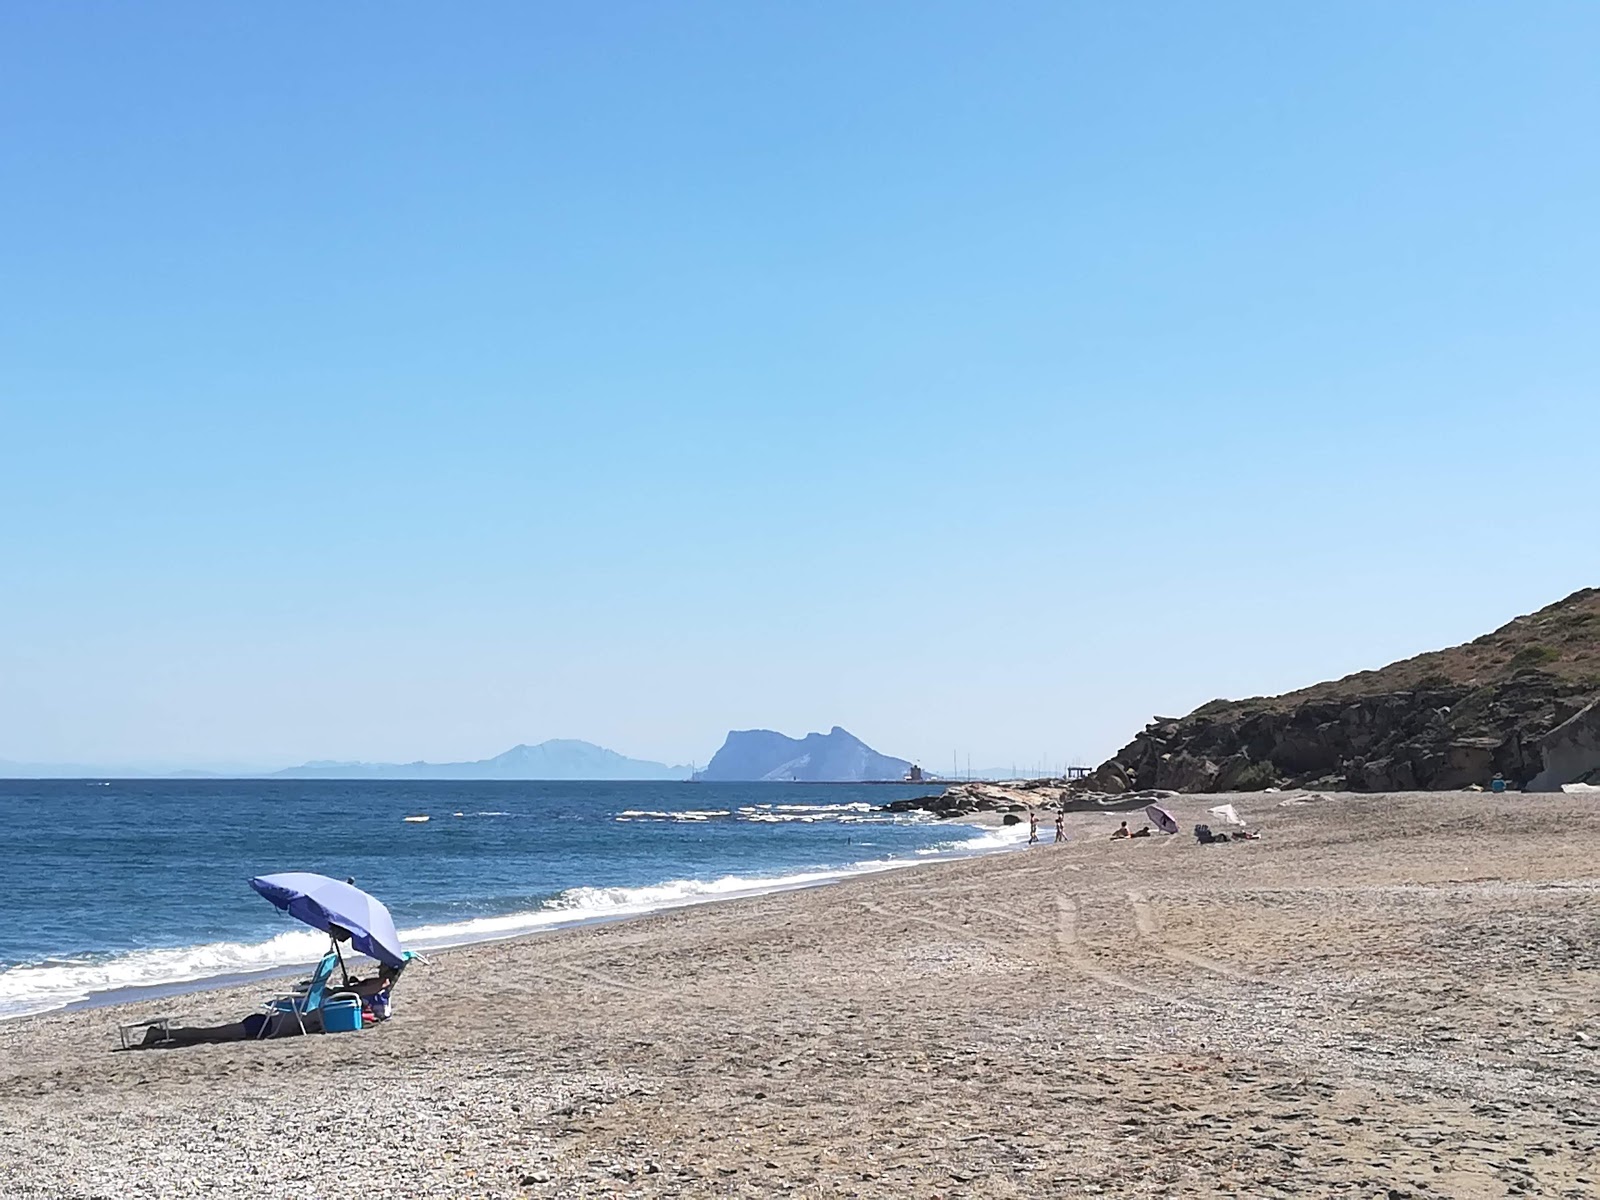 Fotografie cu Playa de Cala Sardina - locul popular printre cunoscătorii de relaxare